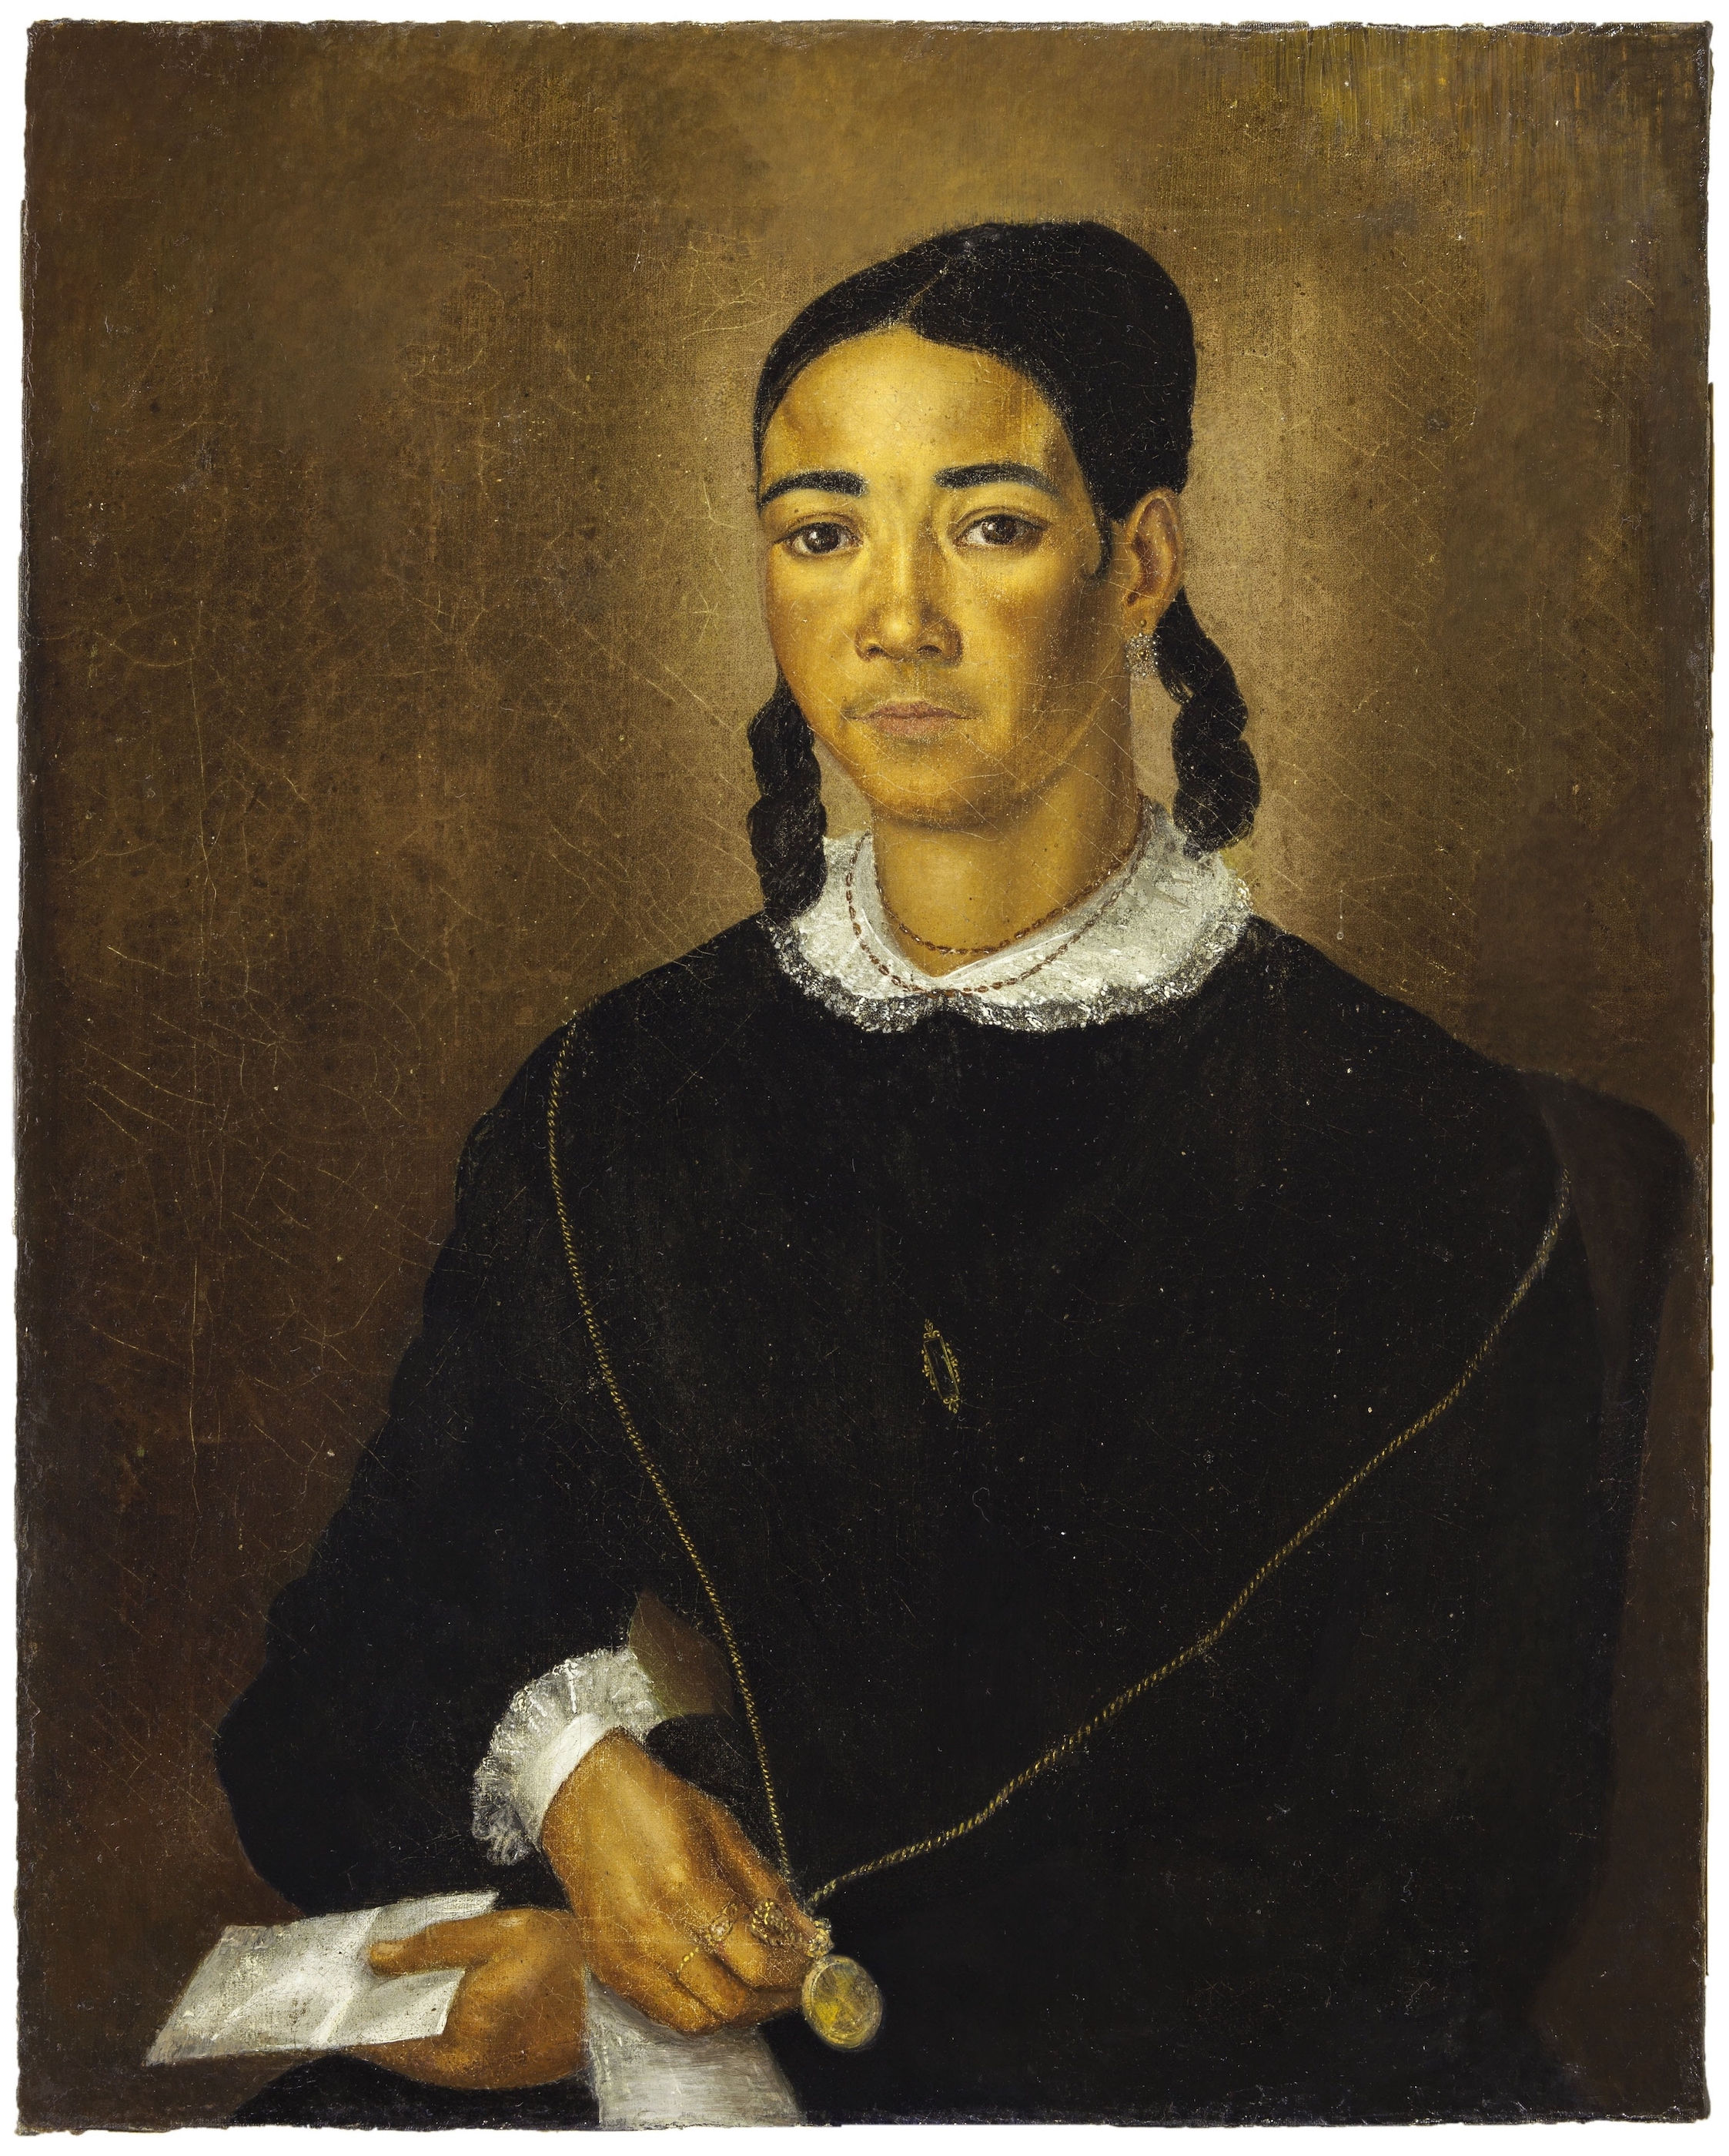 Ritratto di una donna di colore libera by François Fleischbein - 1833-1835 